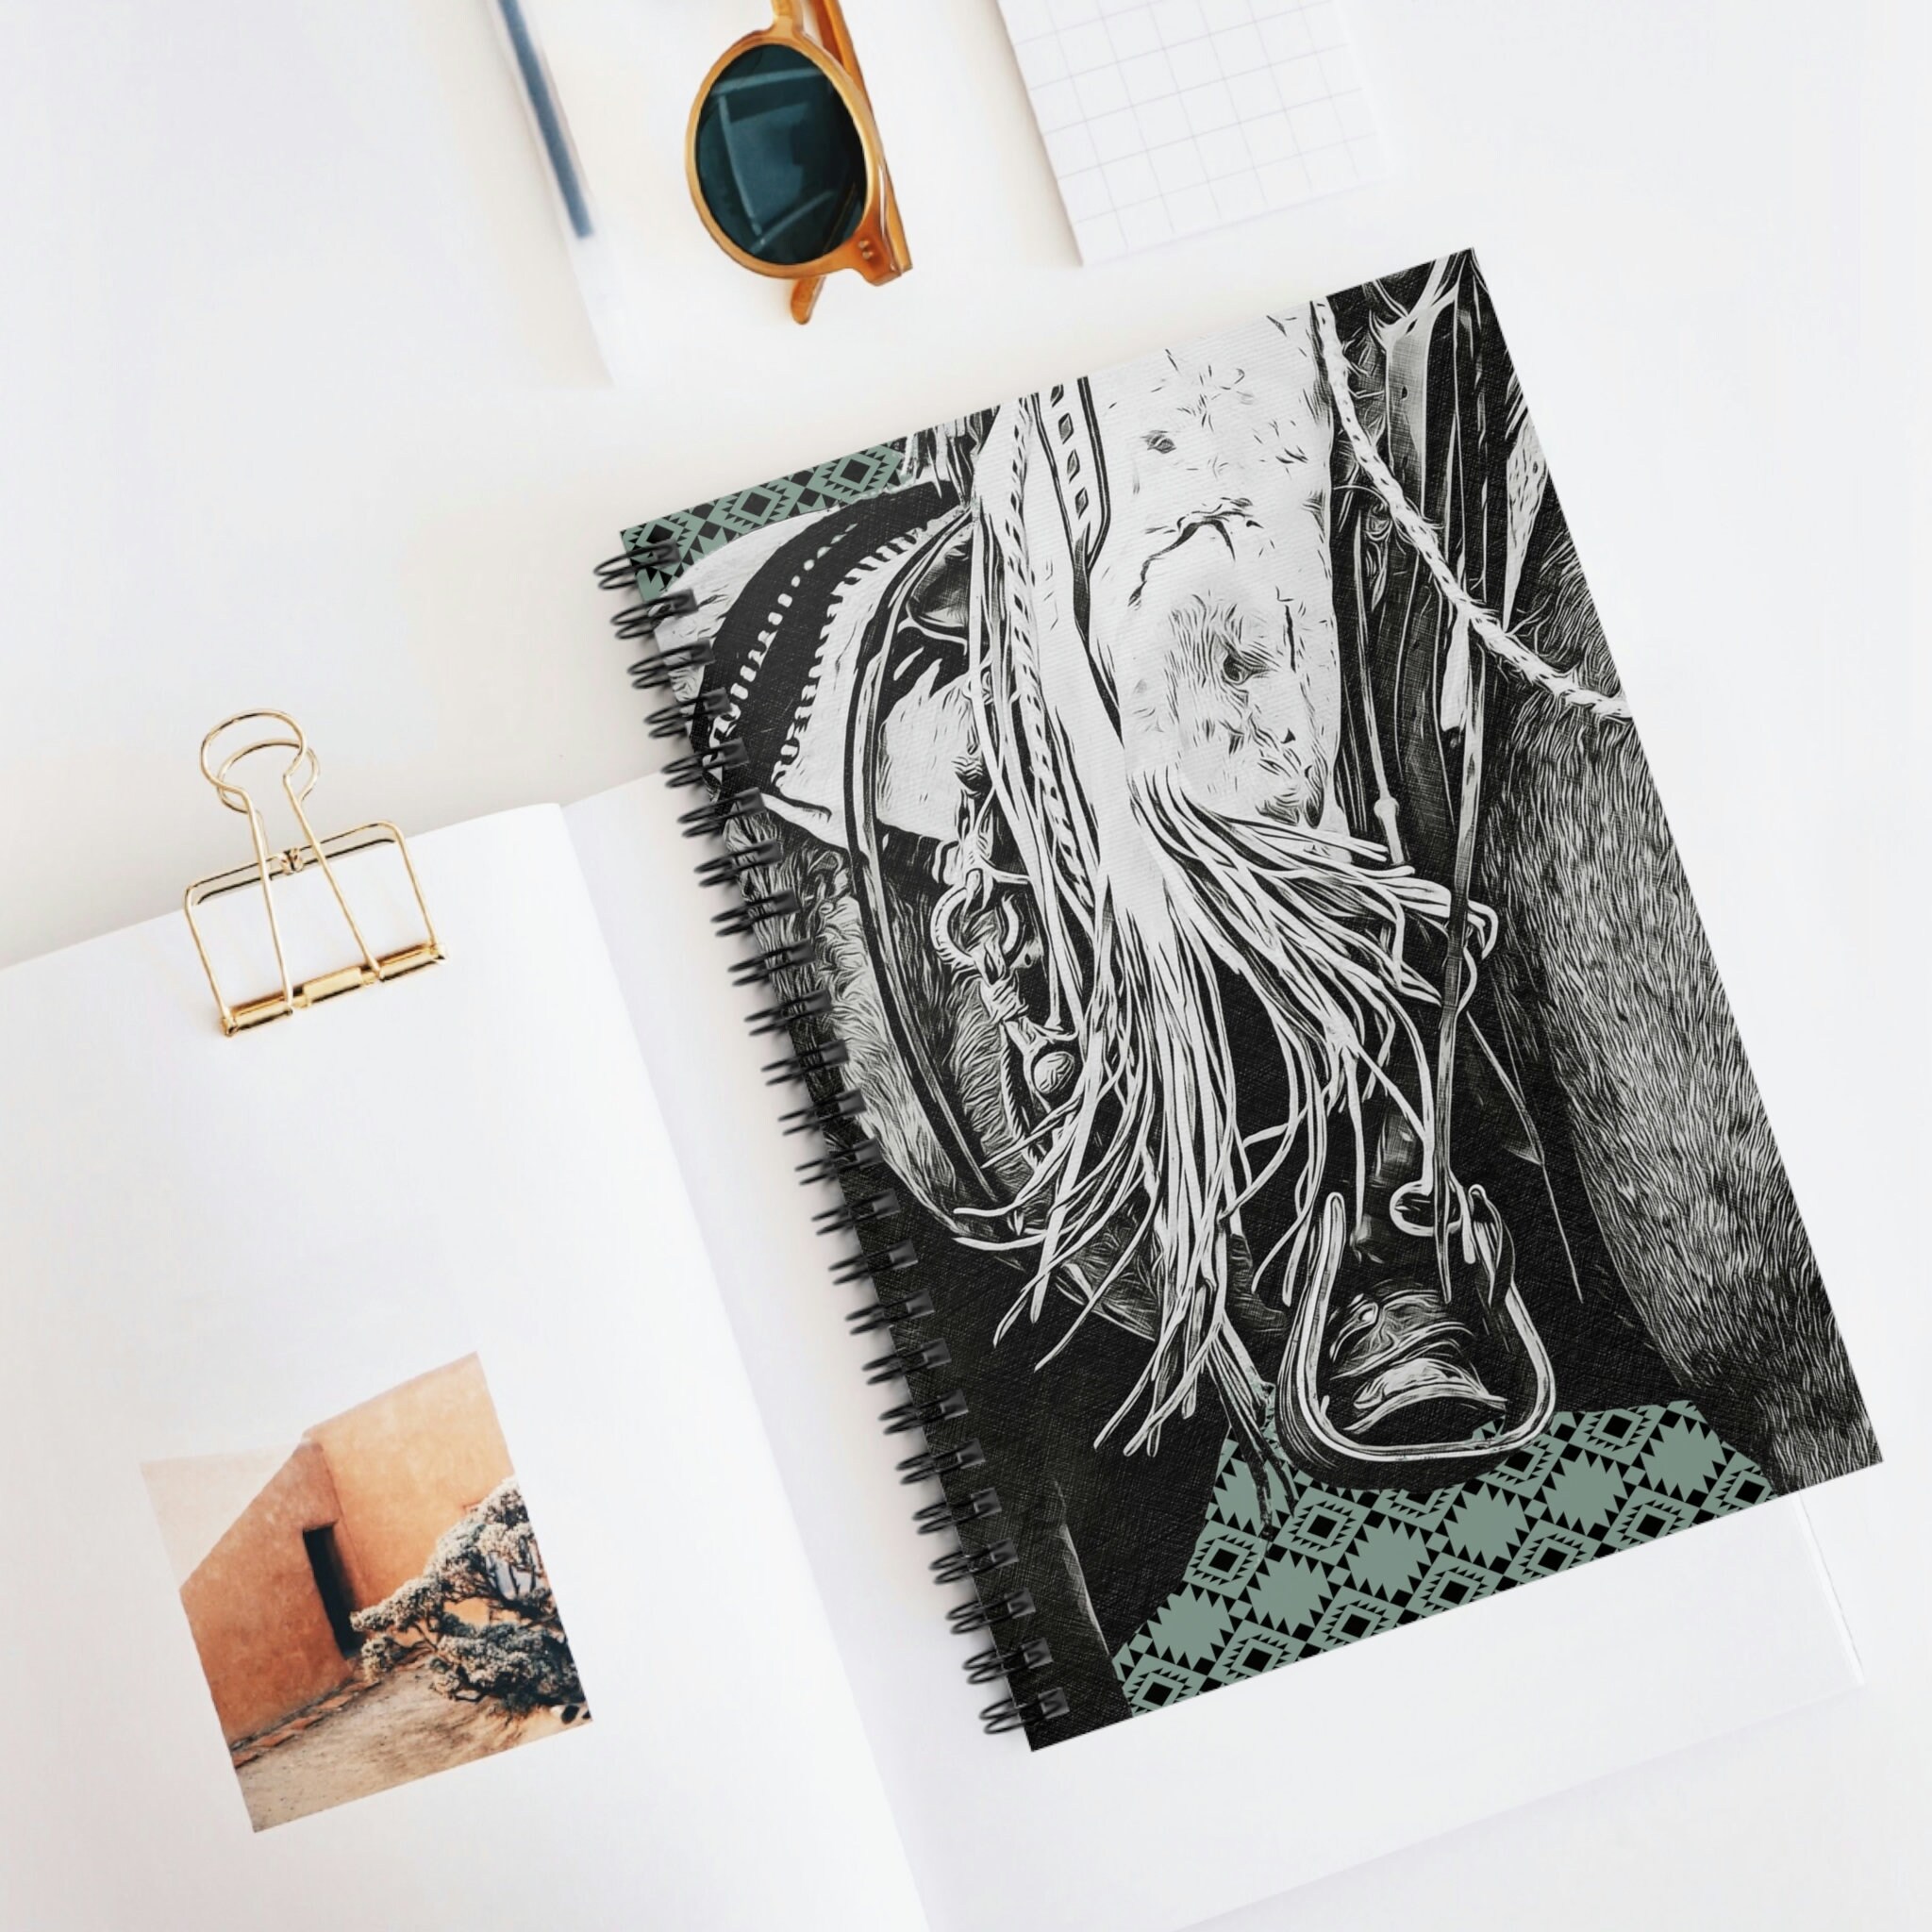 Oregairu Art Design (HIGH QUALITY) Spiral Notebook for Sale by shigurui7